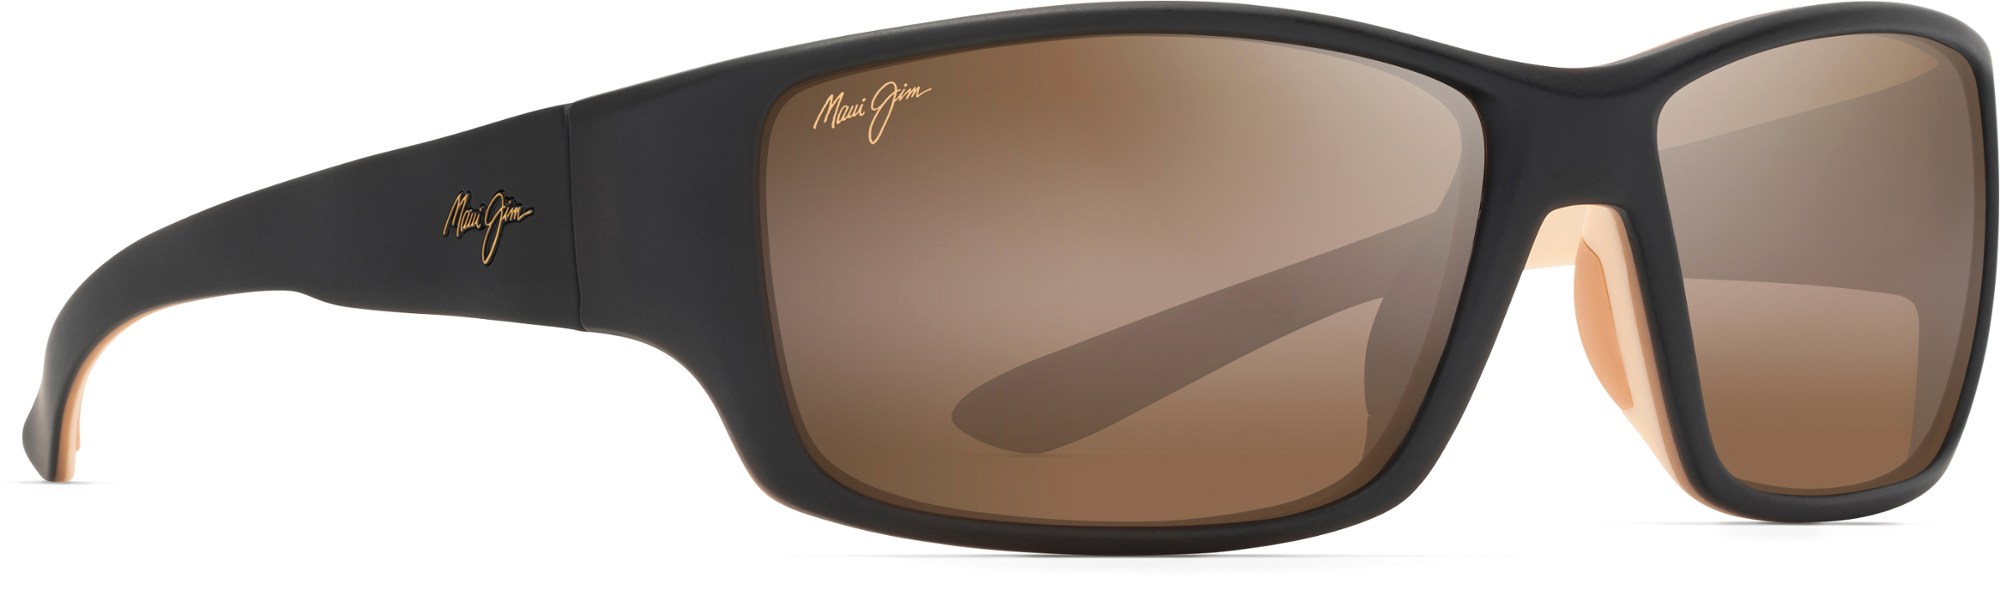 цена Поляризованные солнцезащитные очки Local Kine Maui Jim, коричневый